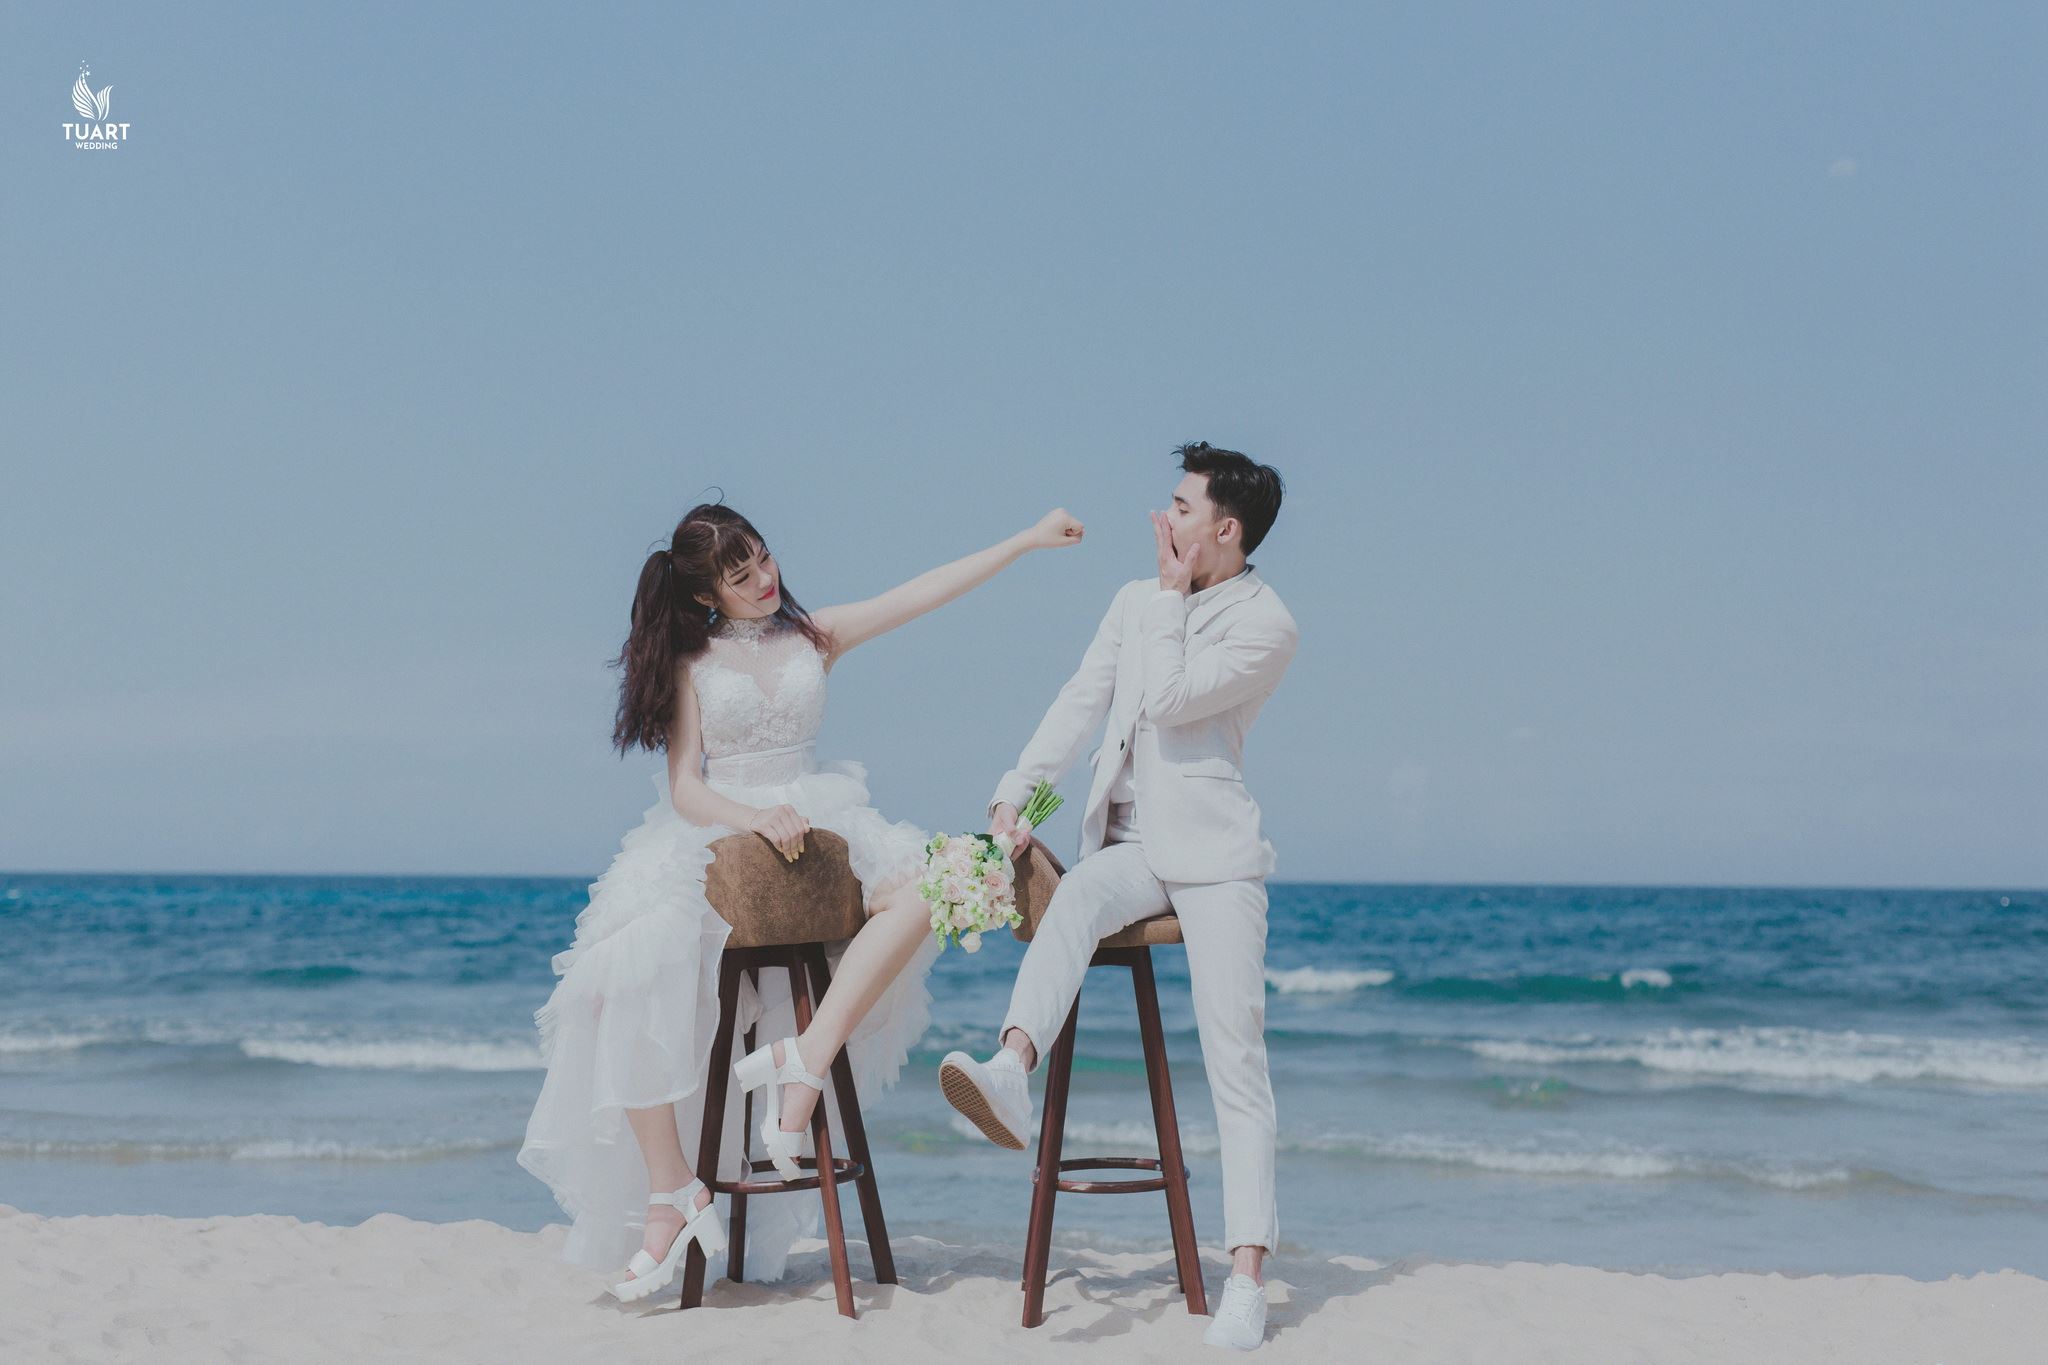 Album chụp hình cưới đẹp tại Đà Nẵng 8